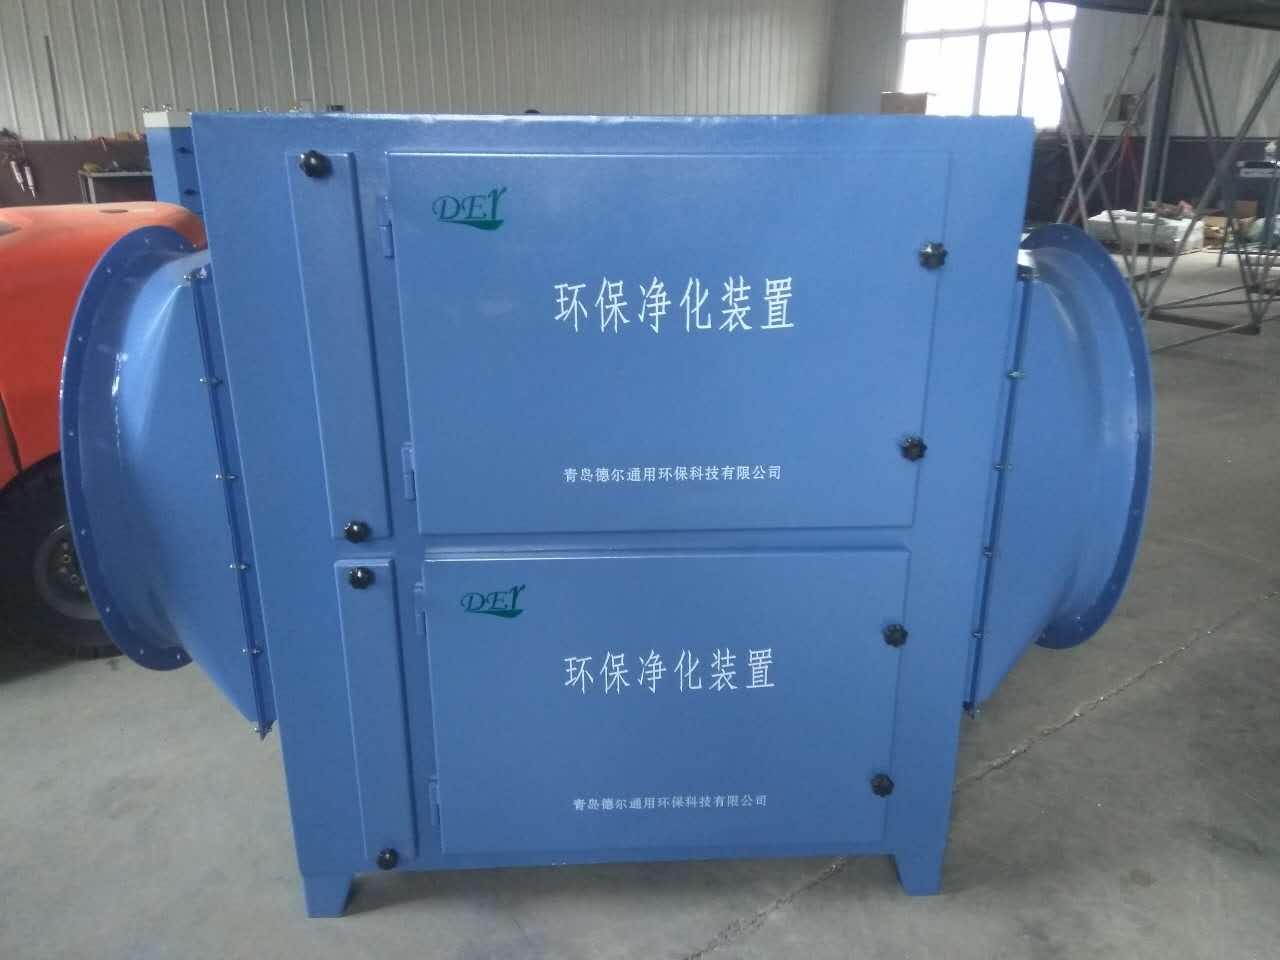 提供杭州德尔蜂窝状活性炭净化器ZK-FK-2.0经济型质量可靠